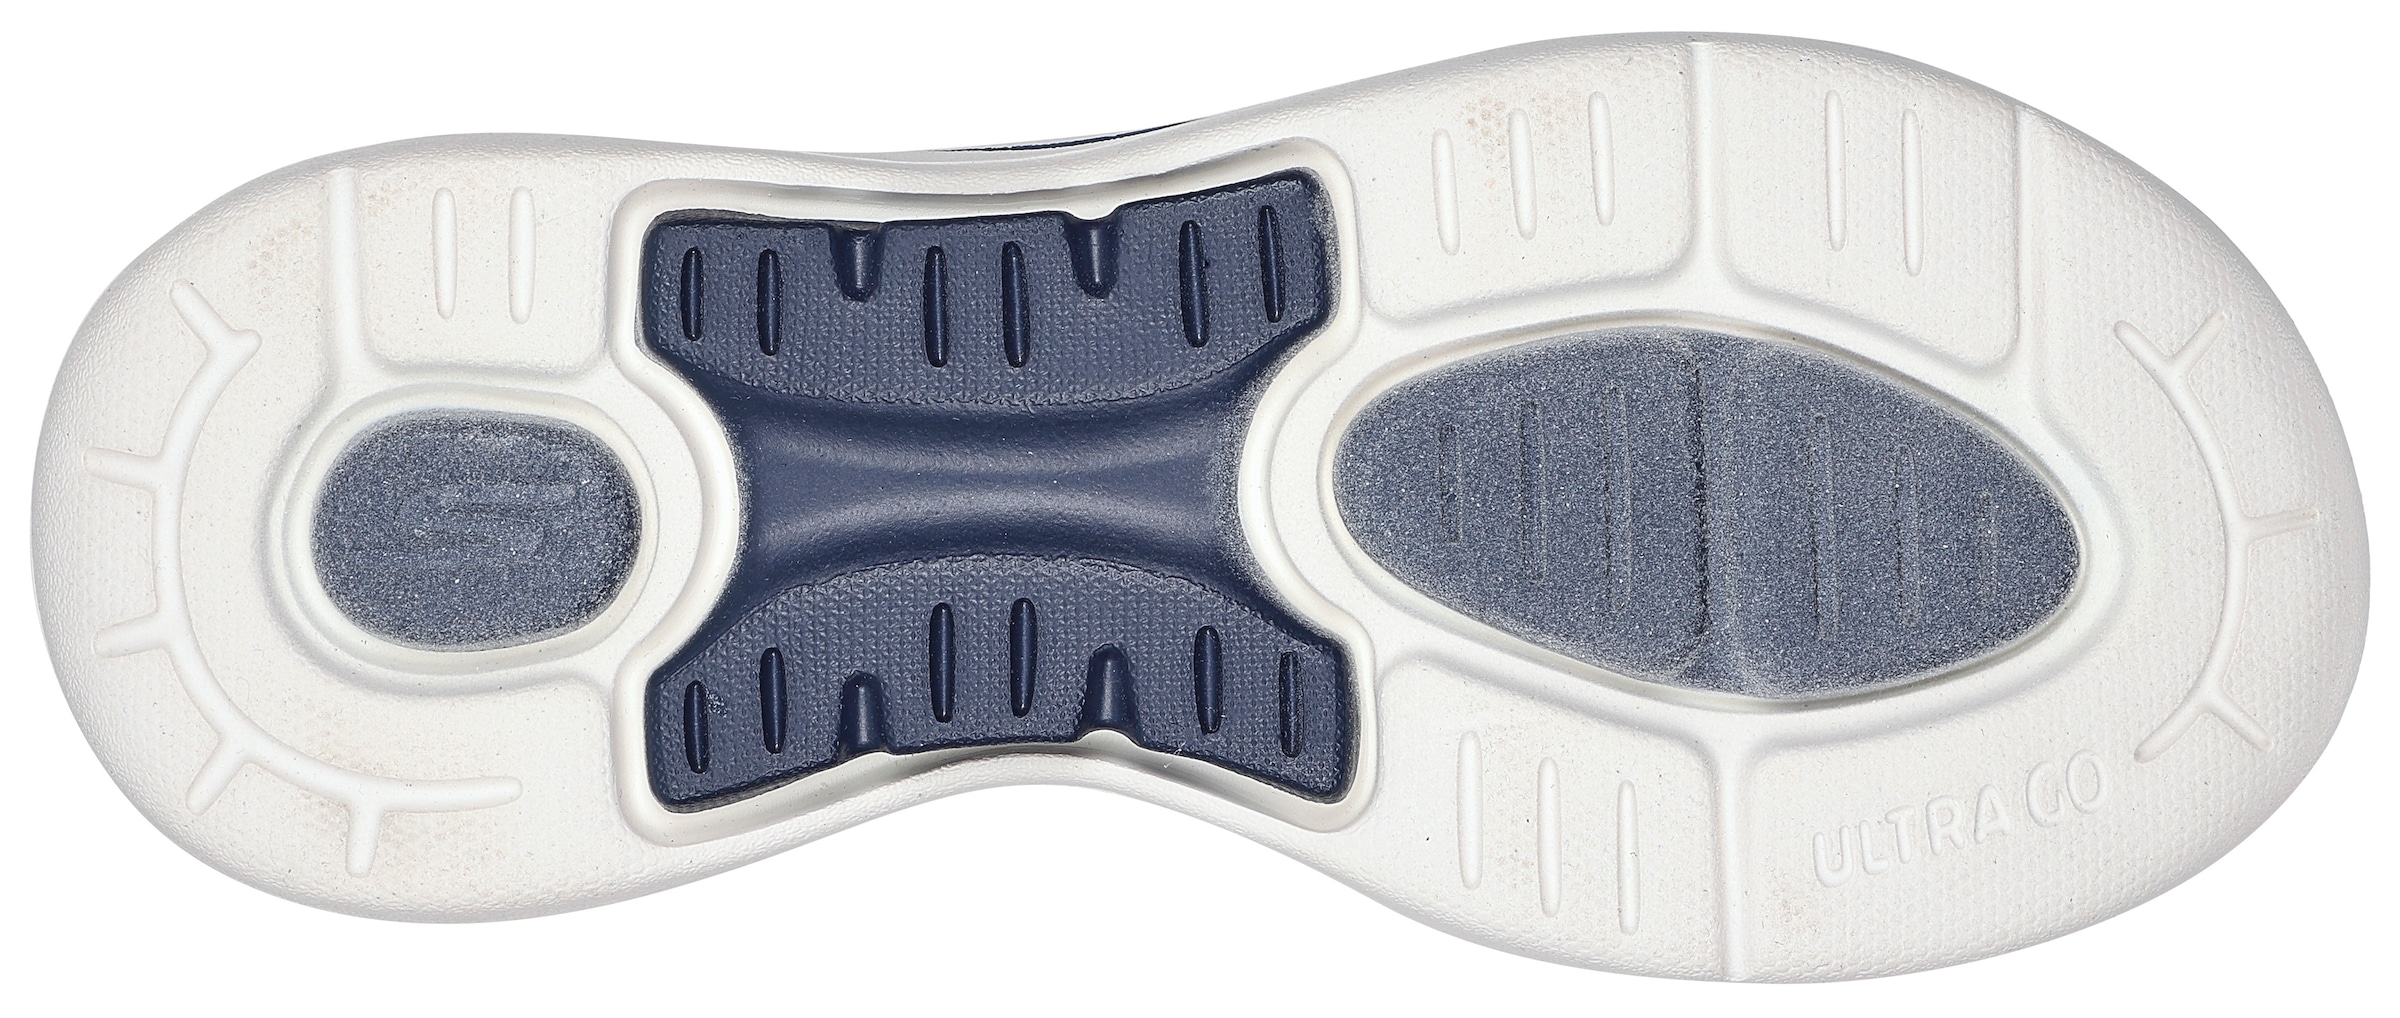 Skechers Sandale »GO WALK ARCH FIT SANDAL-POLISHED«, Sommerschuh, Sandalette, Klettschuh, für Maschinenwäsche geeignet